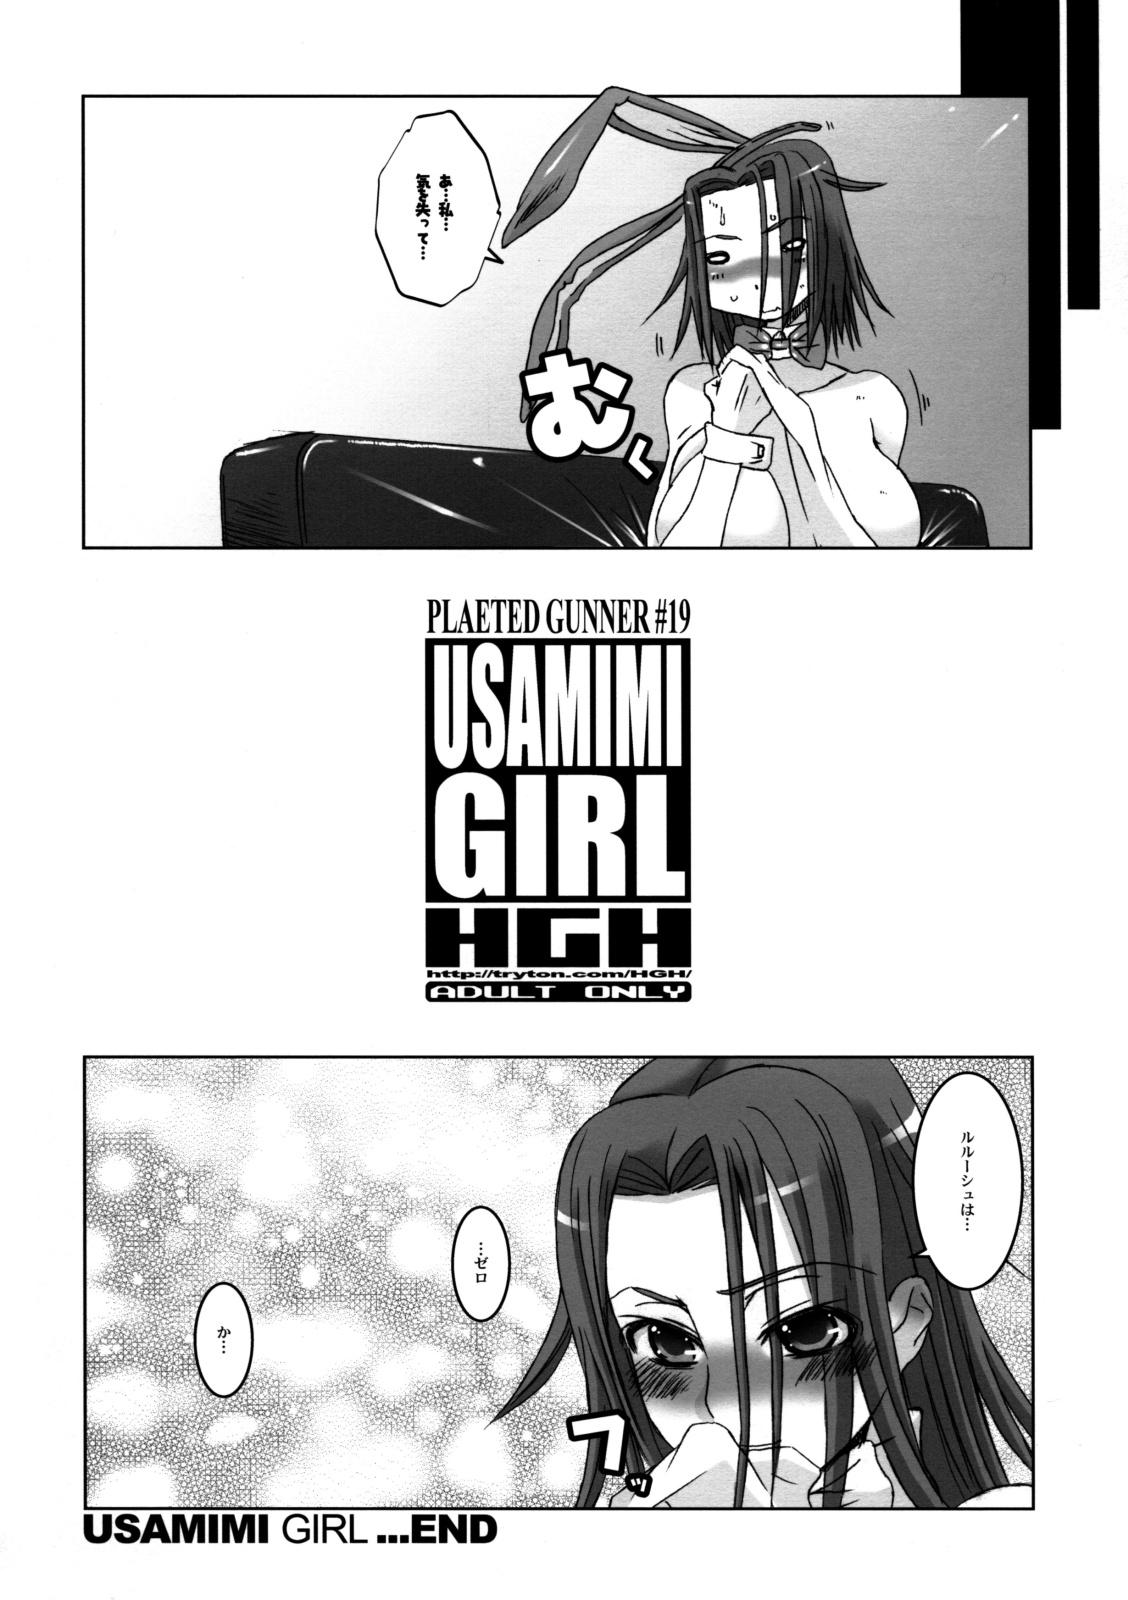 Pleated Gunner #19 - Usamimi Girl 22